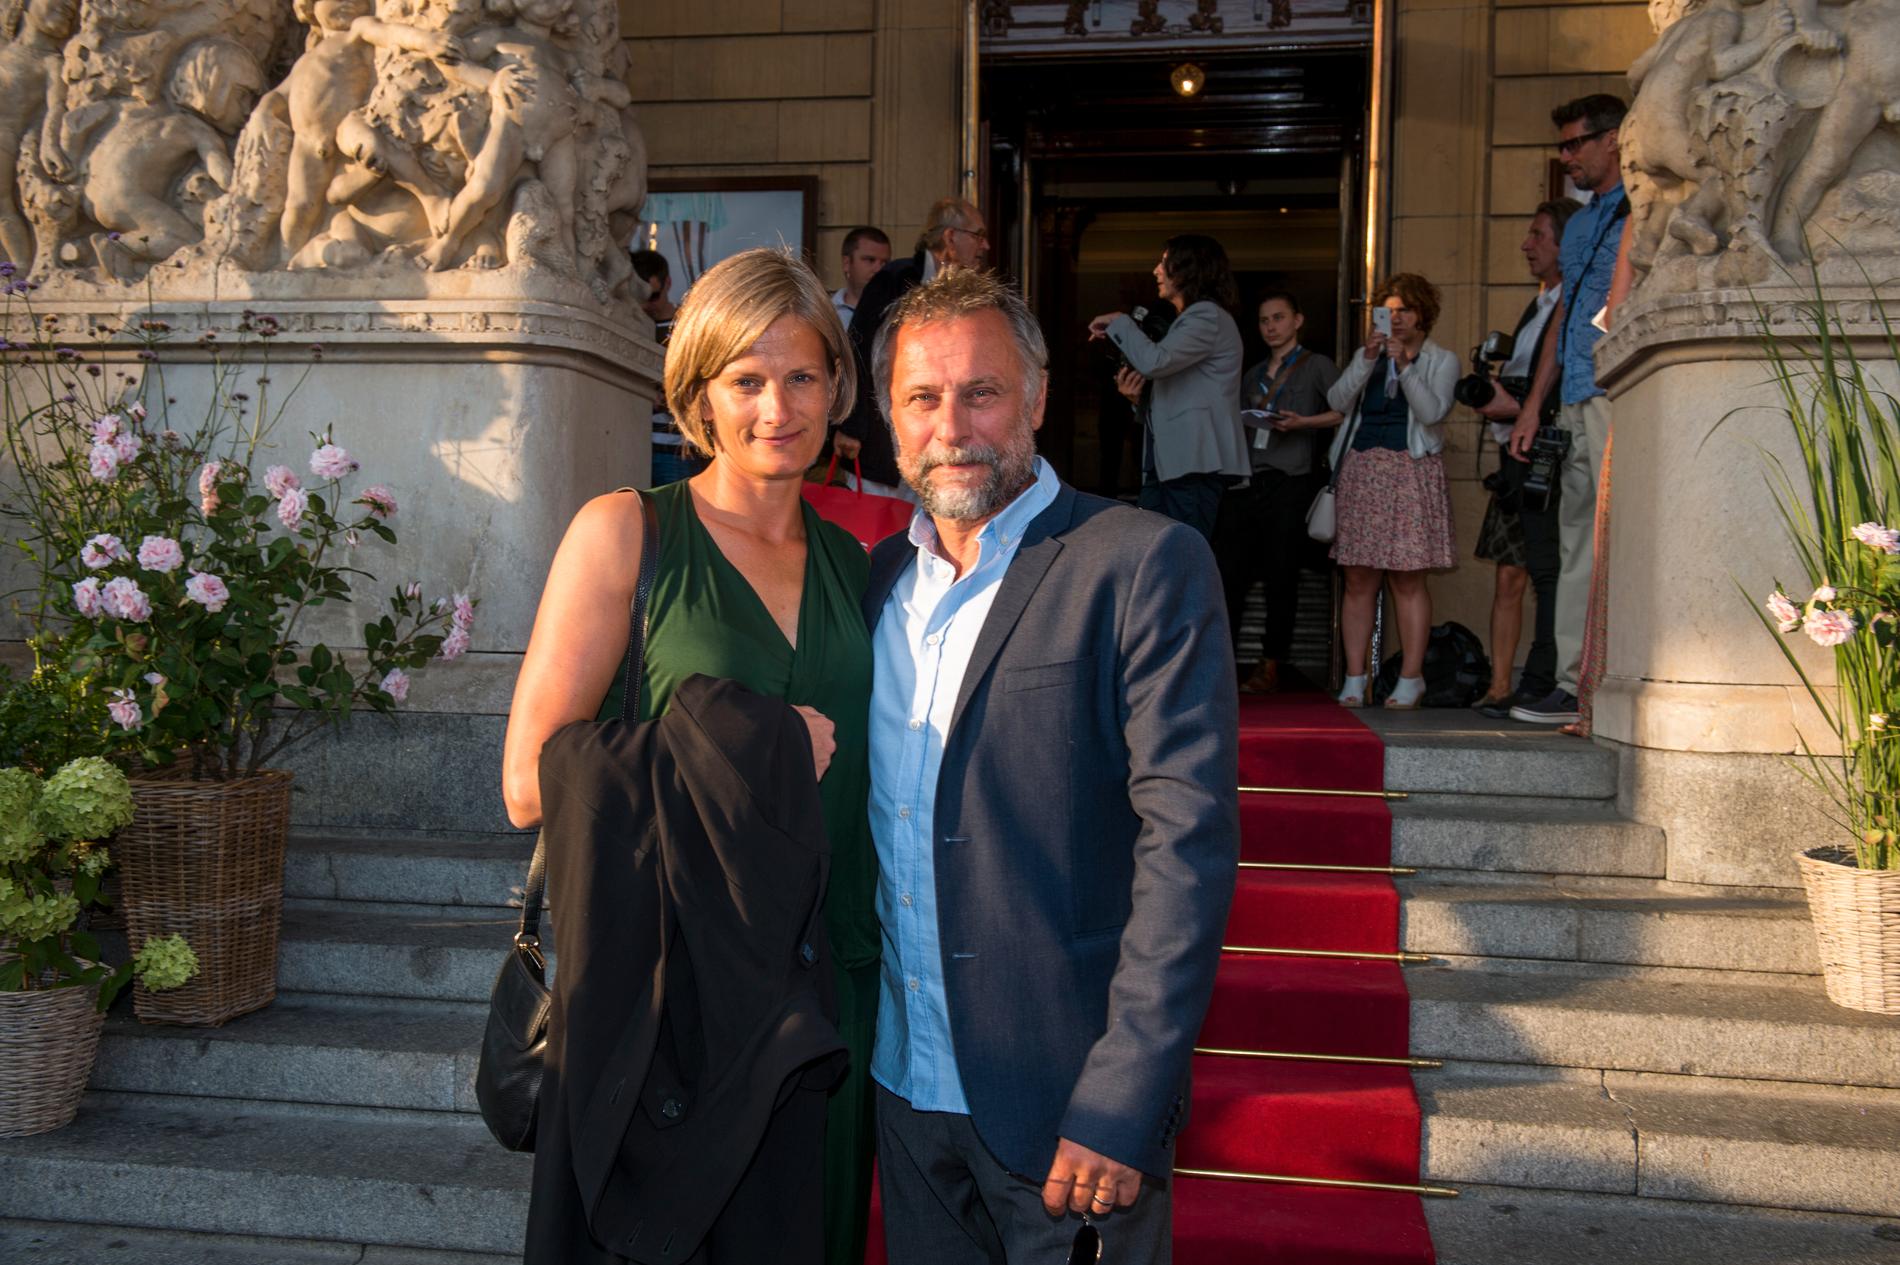 Michael Nyqvist med maka Catharina Nyqvist Ehrnrooth på premiär av filmen ”Jag är Ingrid” i augusti 2015.